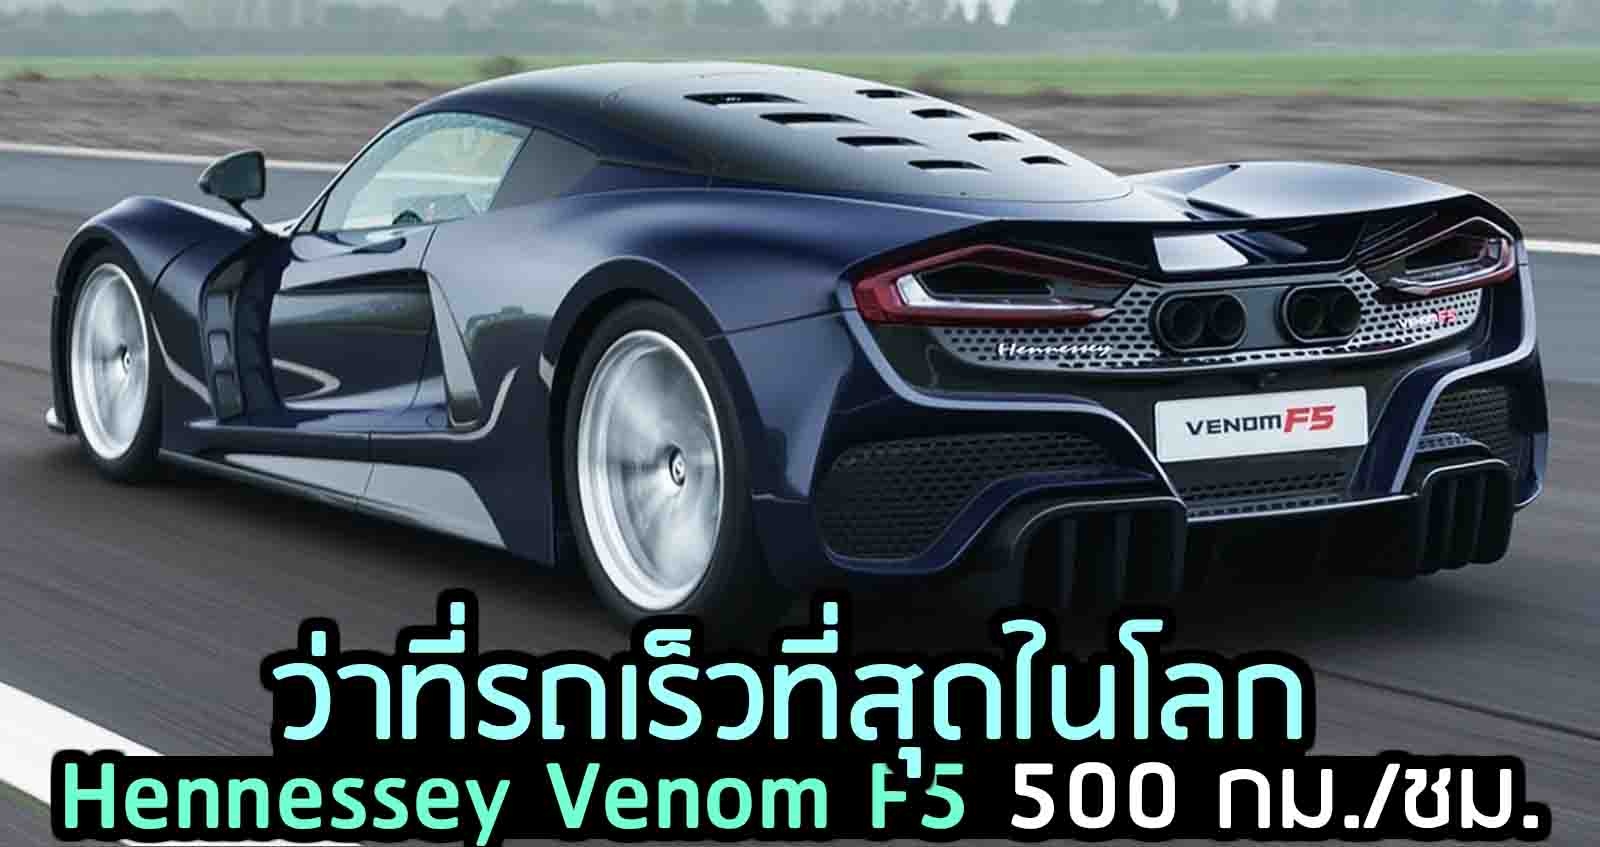 Hennessey Venom F5 ความเร็ว 500 กม./ชม. ว่าที่รถเร็วที่สุดในโลก